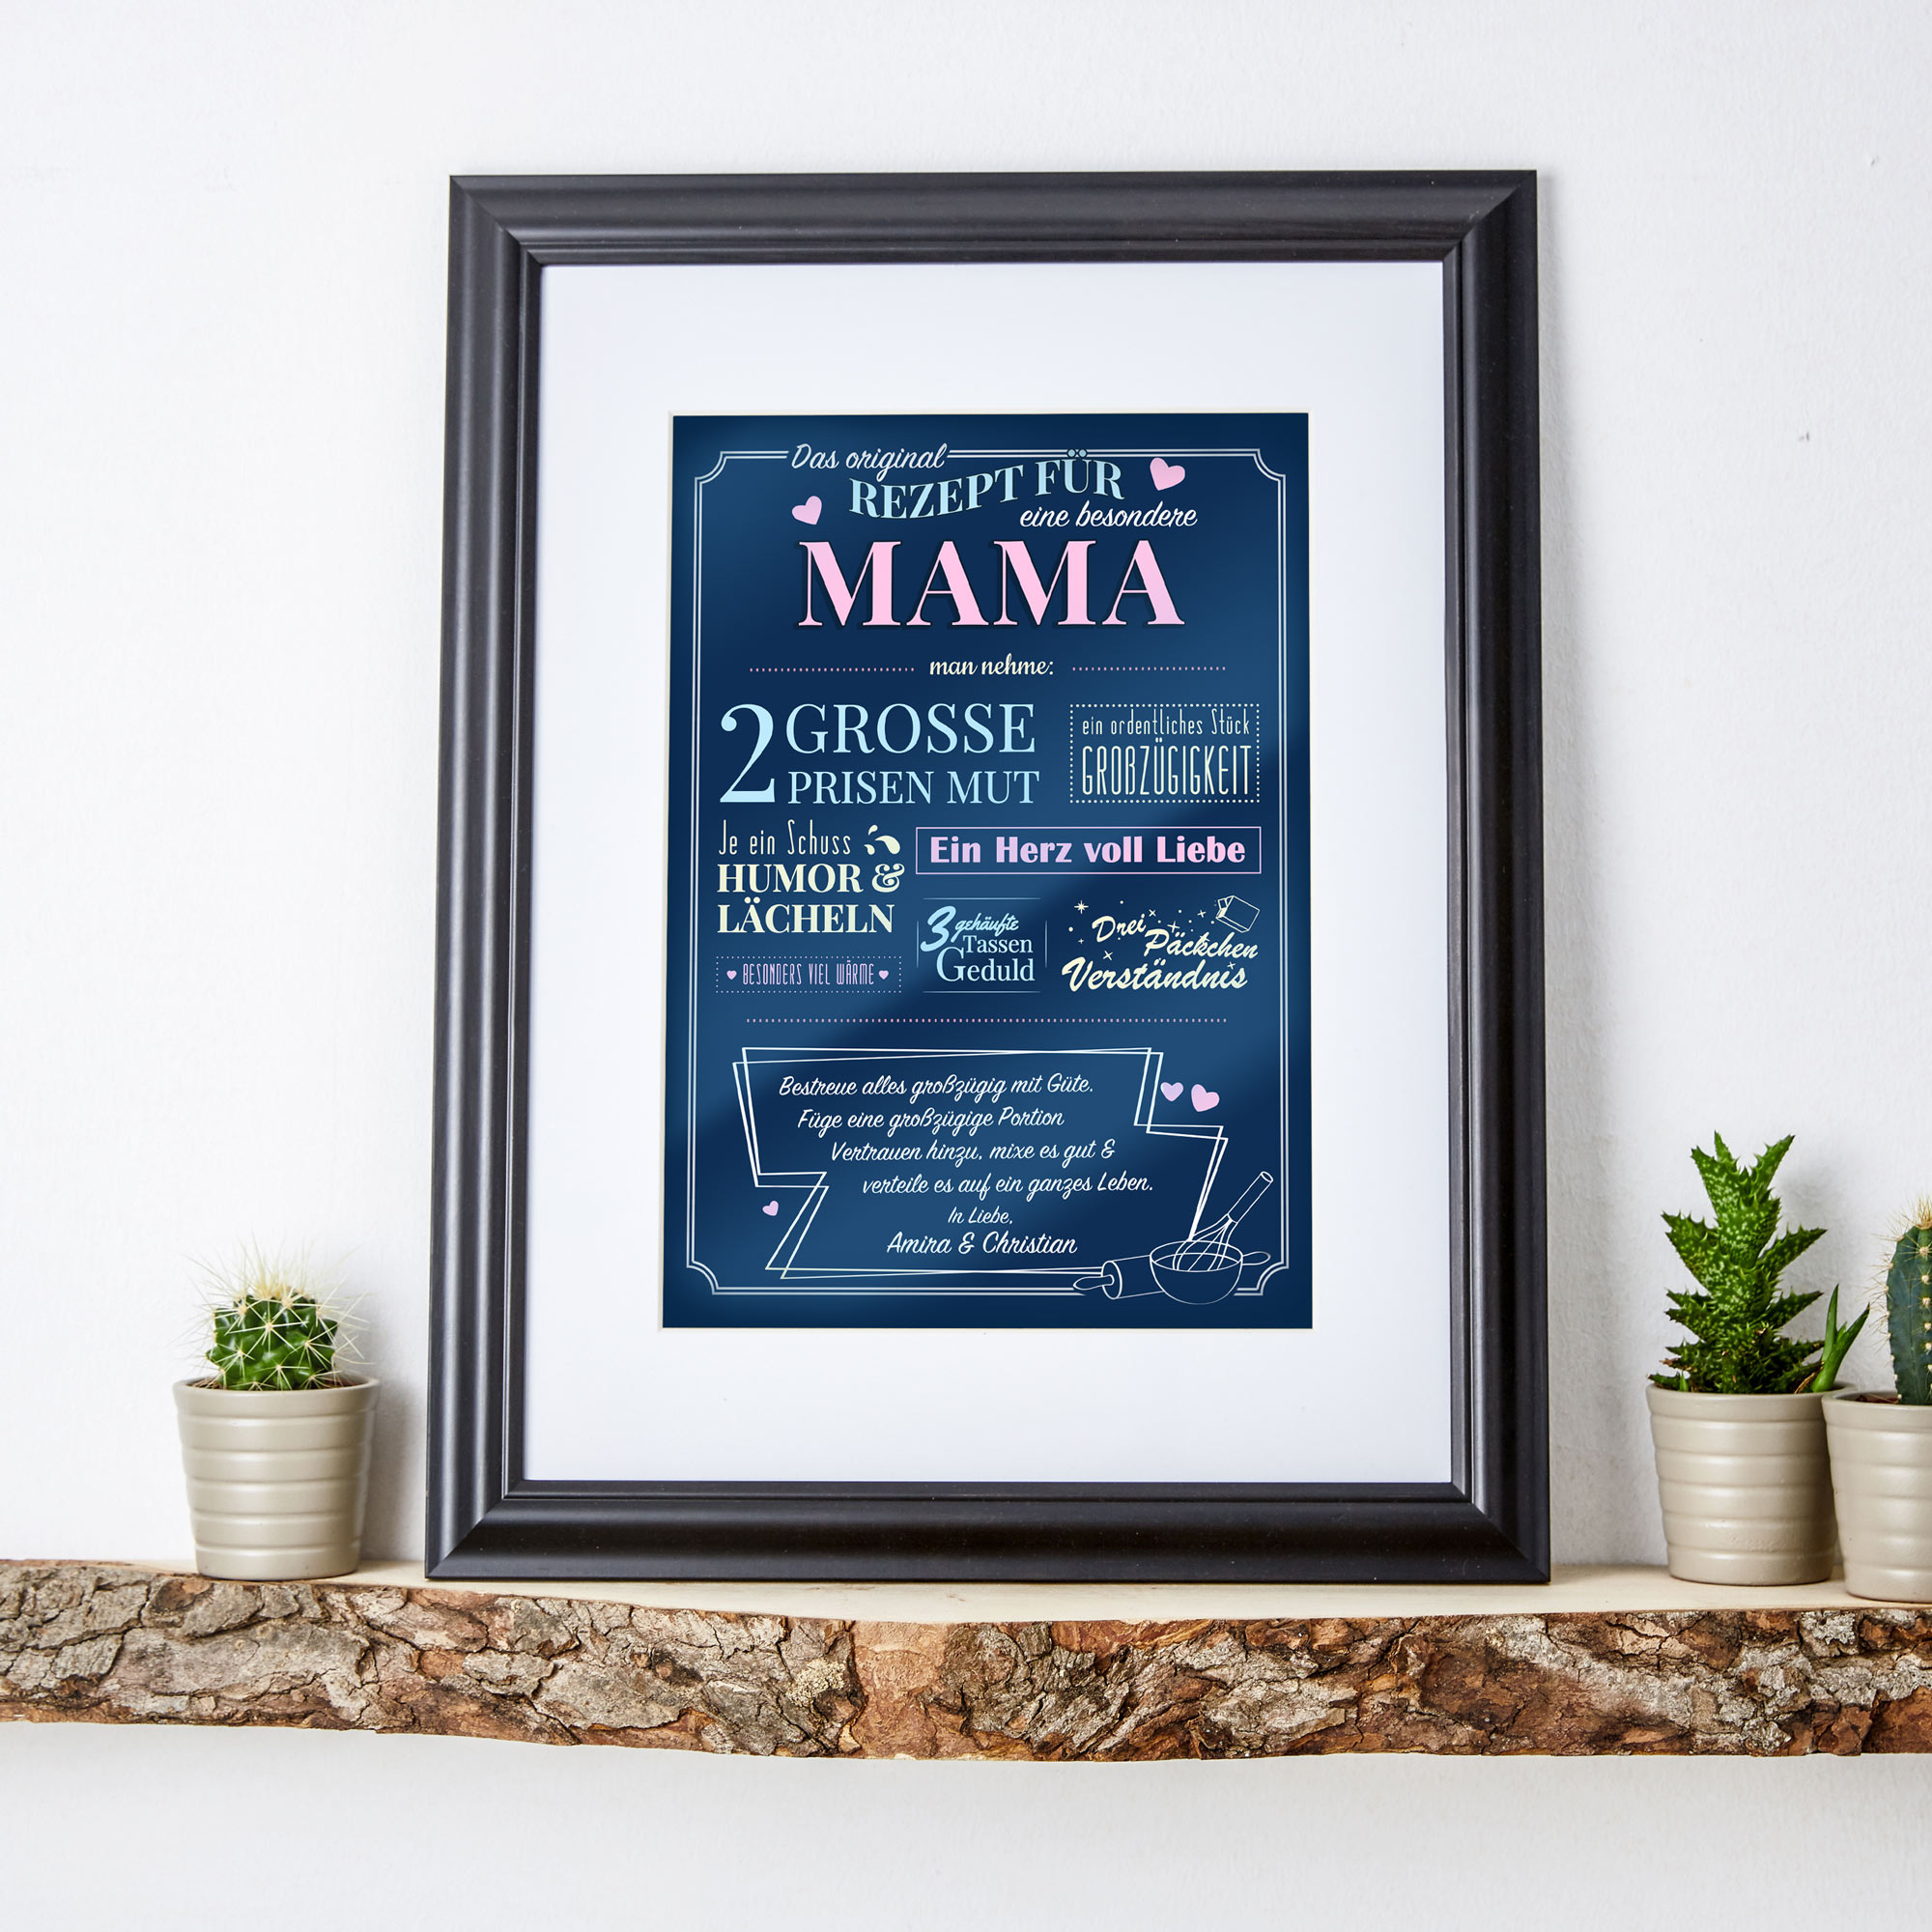 Personalisiertes Wandbild - Rezept für eine besondere Mama